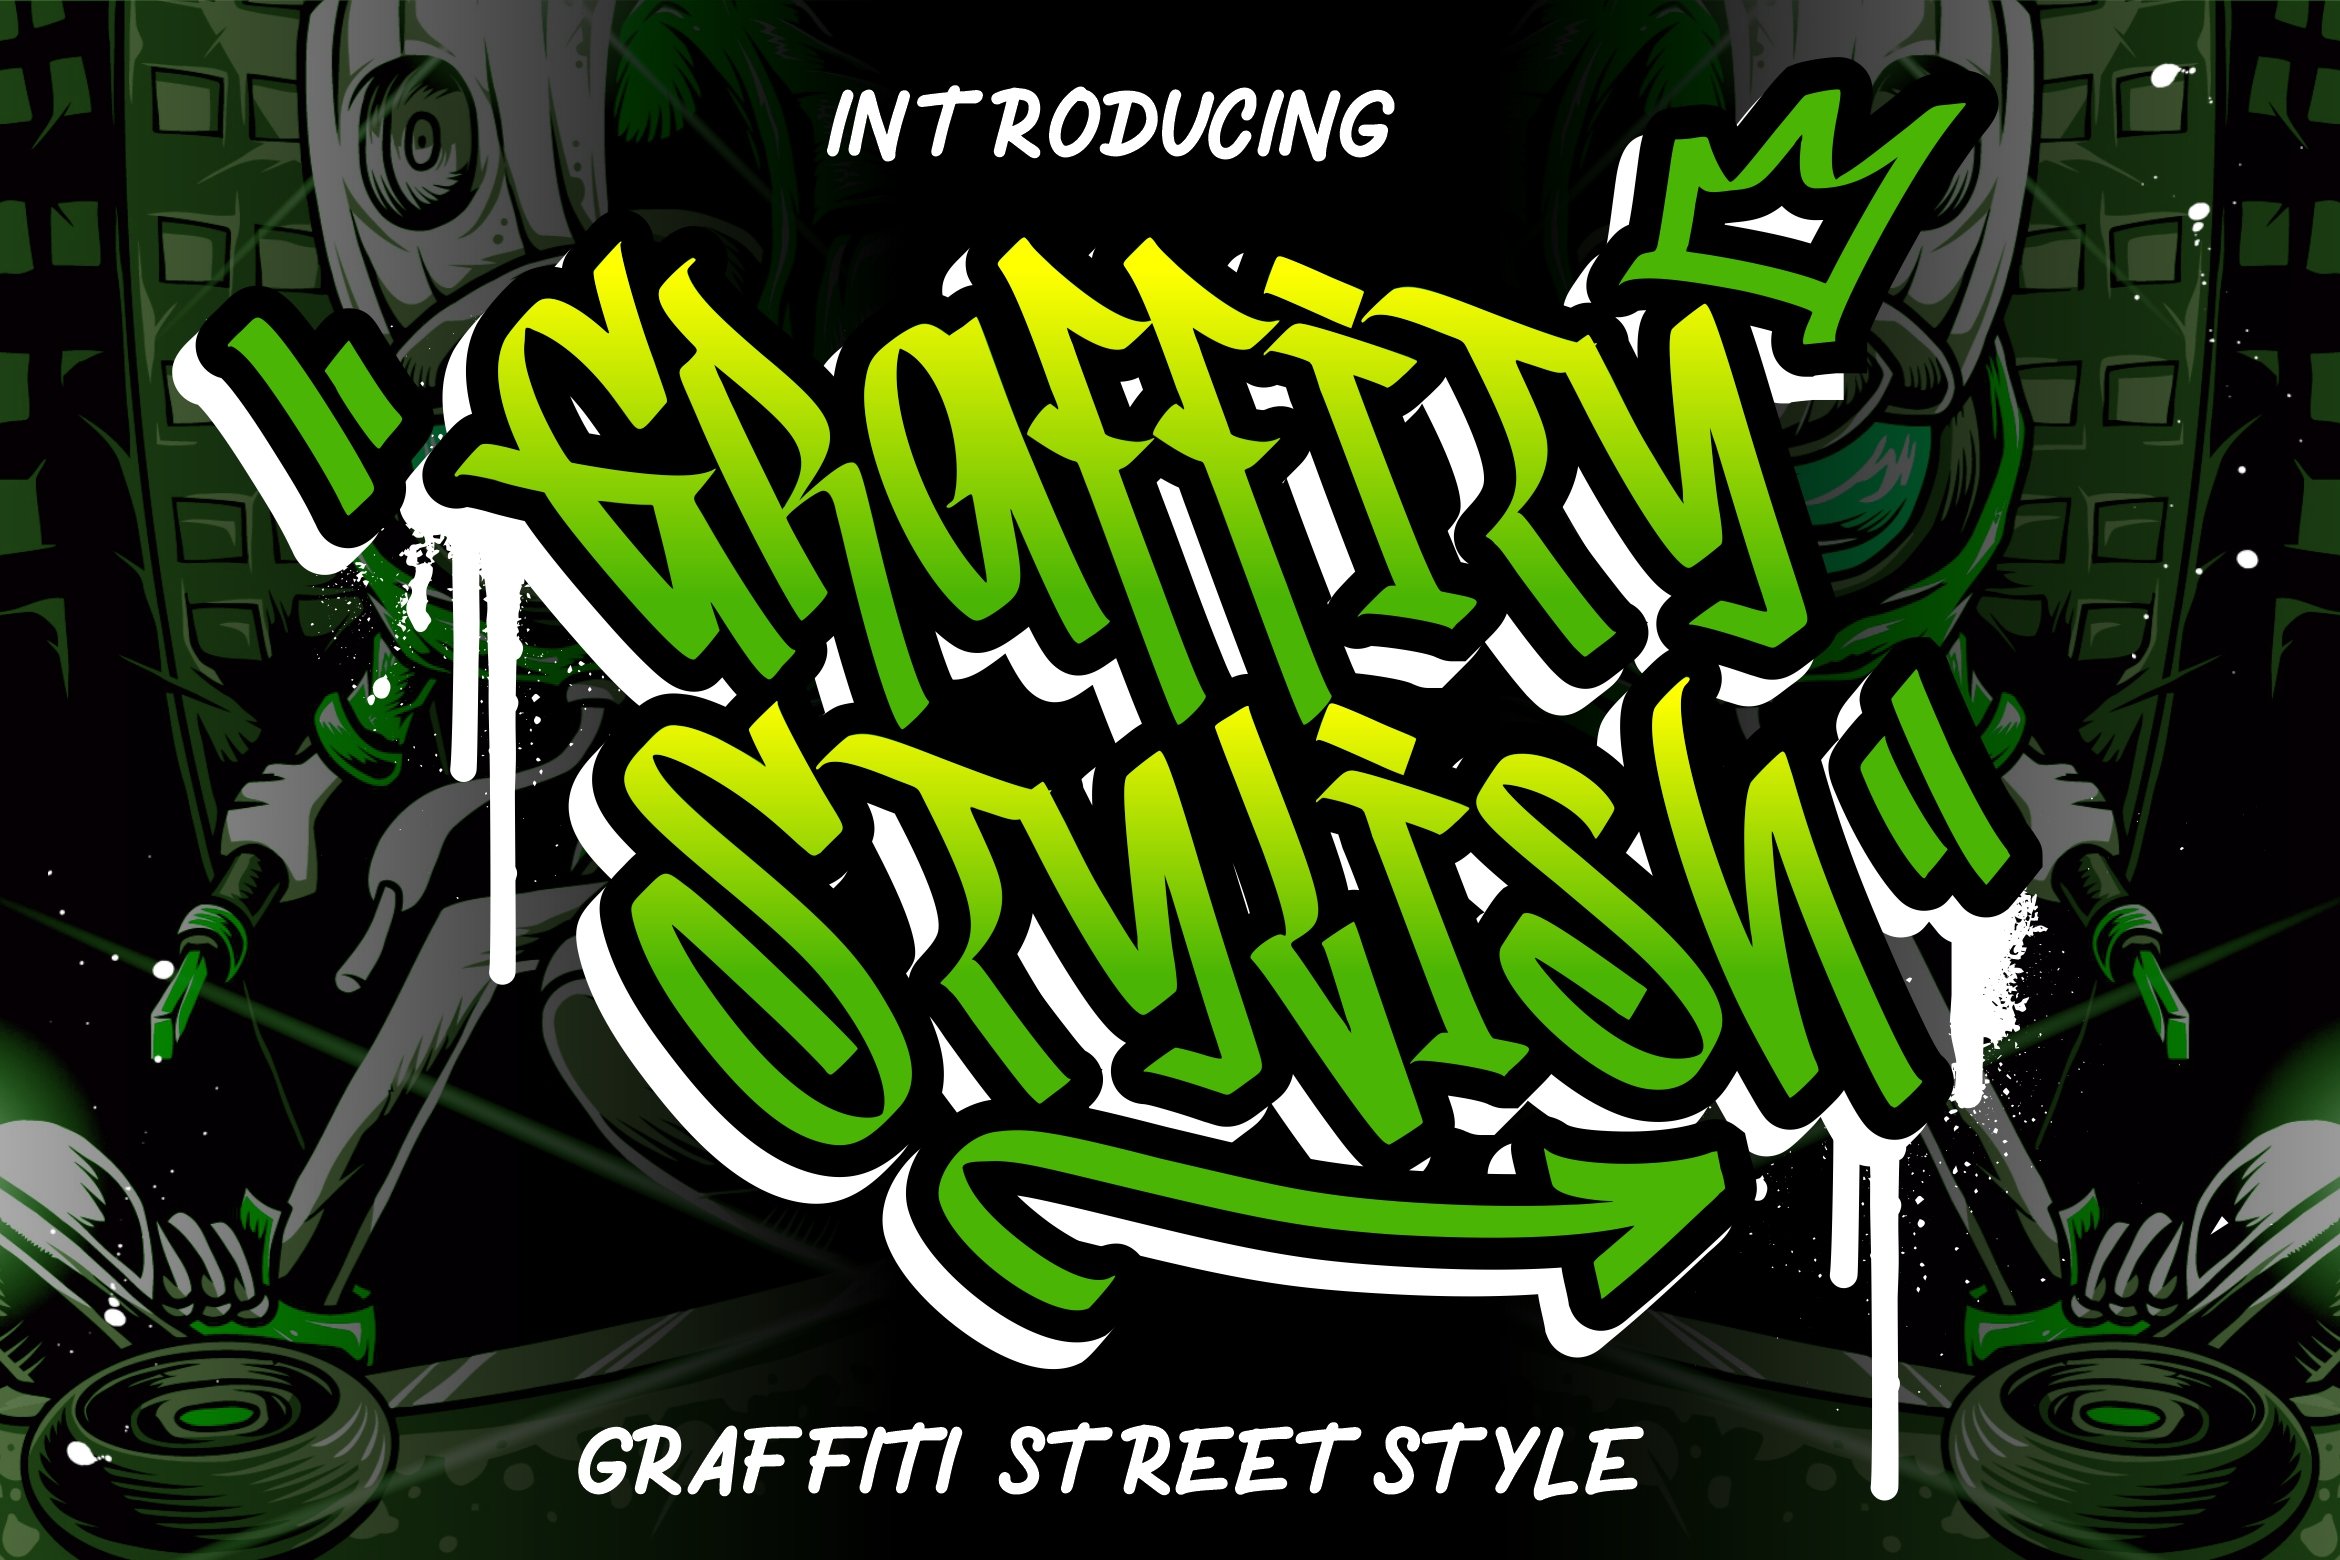 Graffity Stylish Graffiti Street cover image.